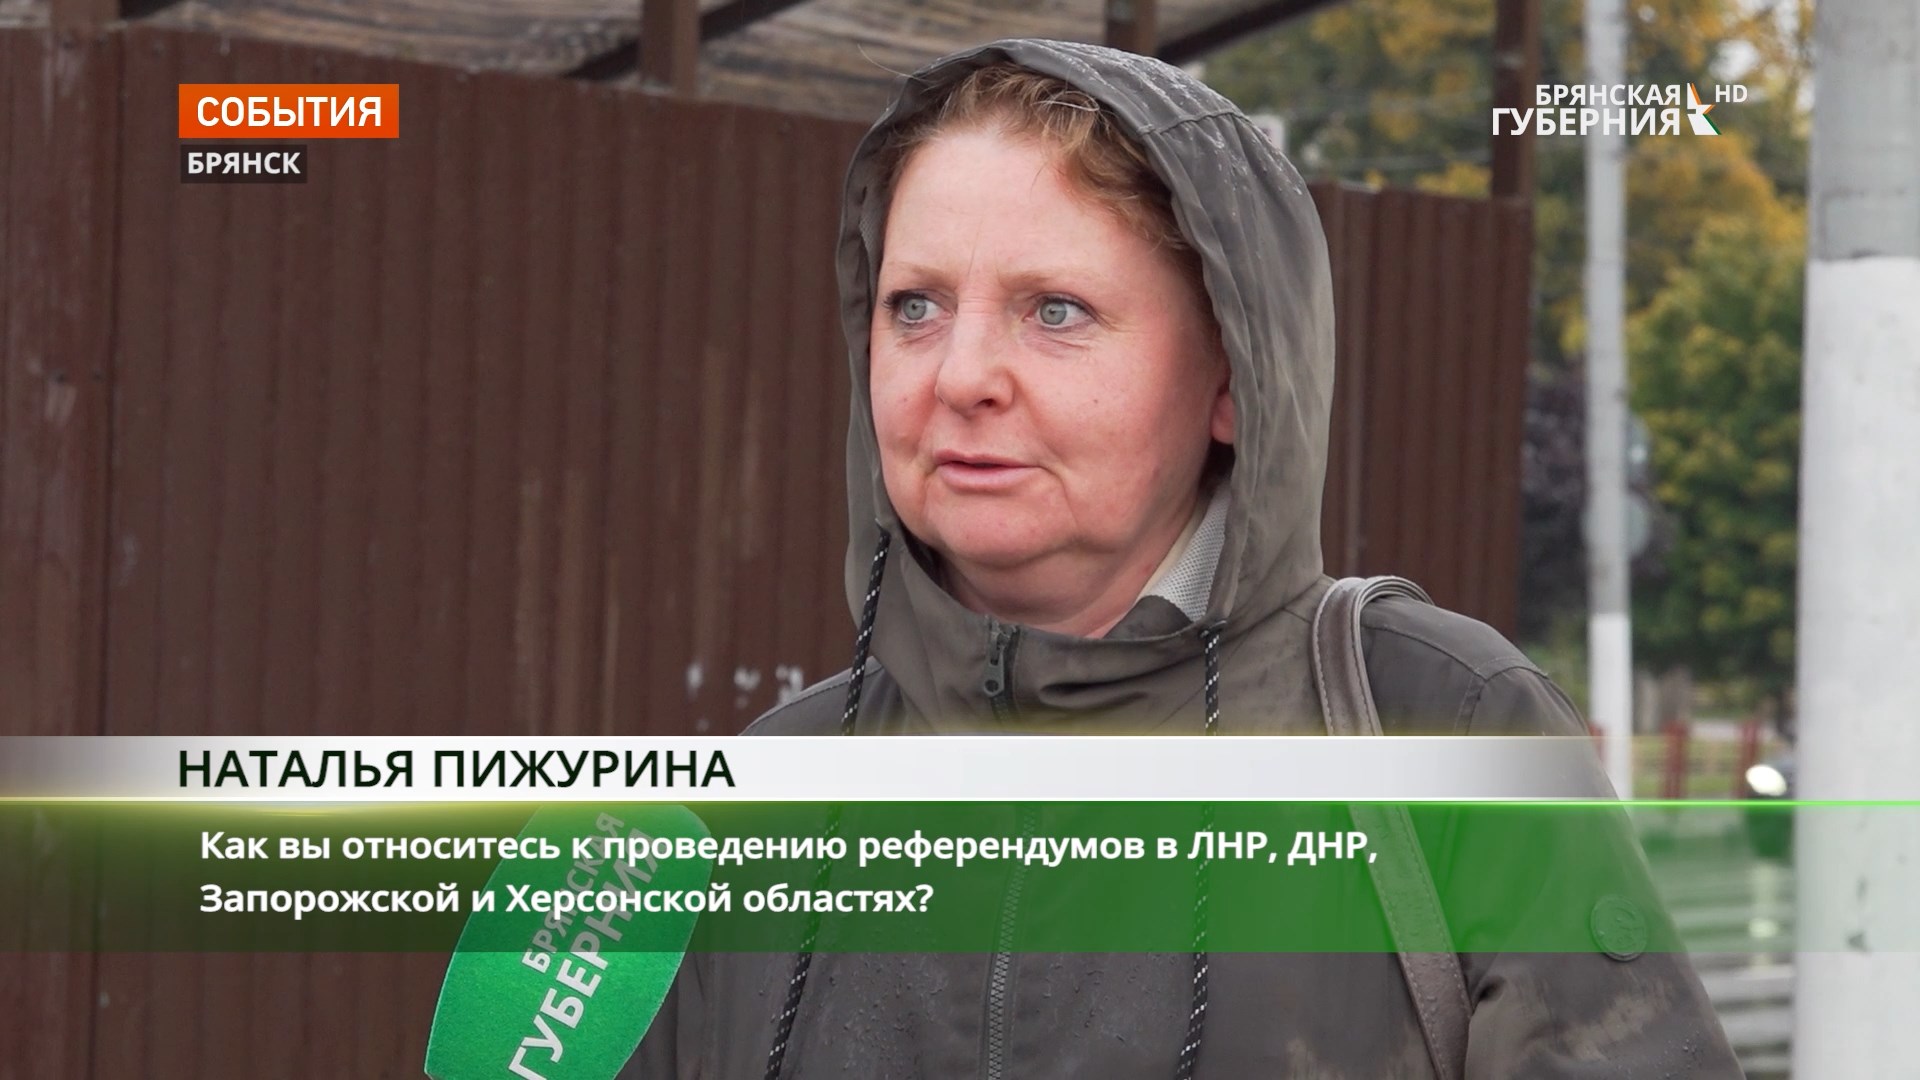 Жители Брянска ждут возвращение Донбасса в Россию